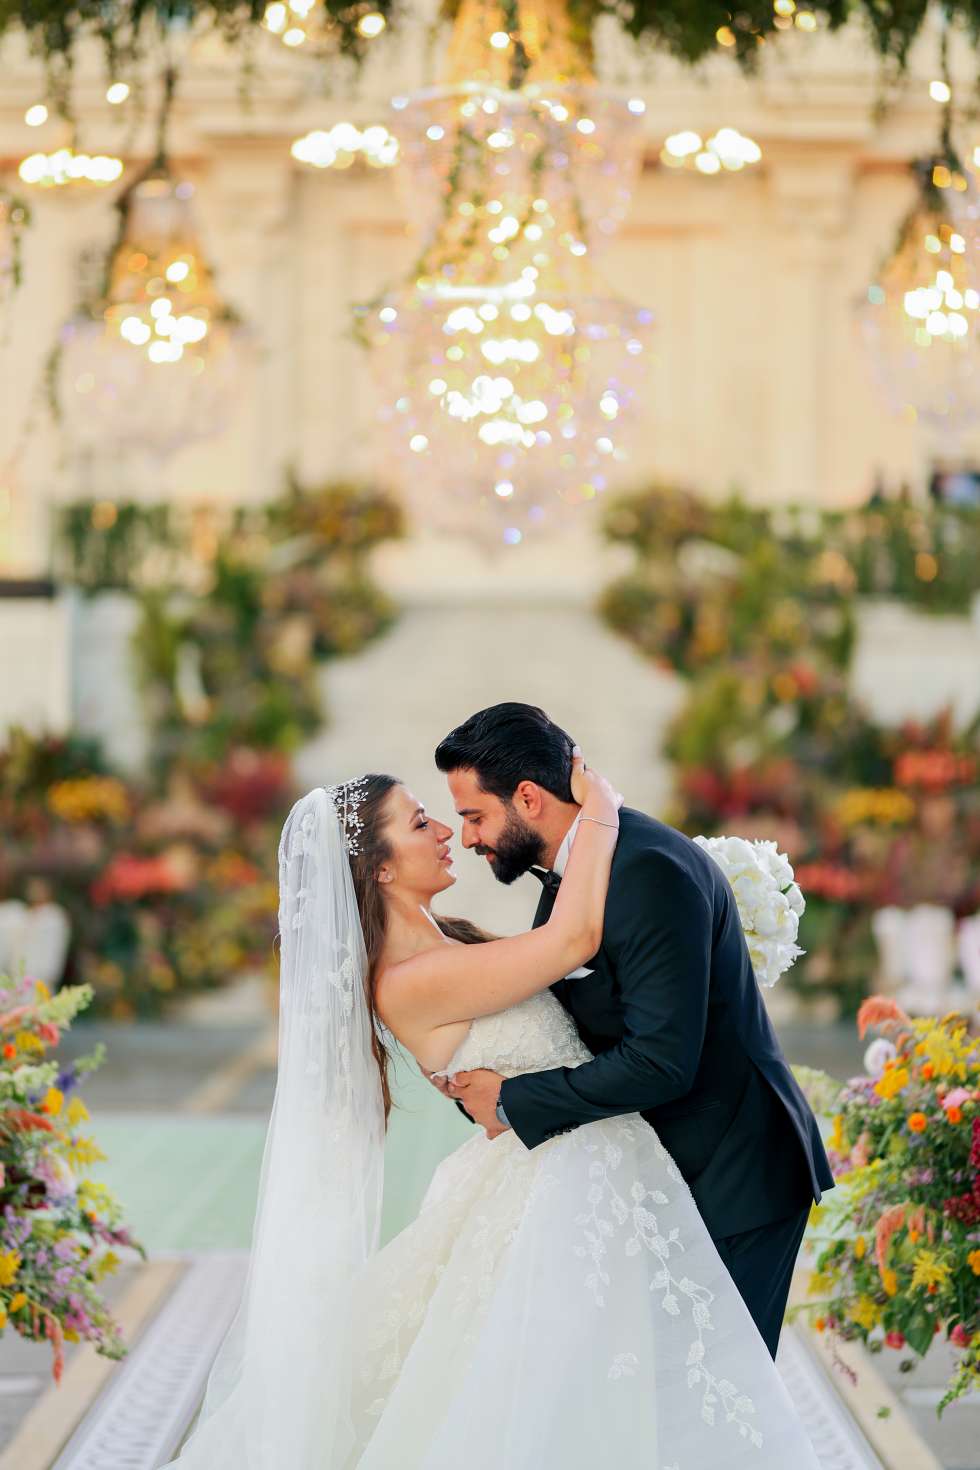 حفل زفاف مستوحى من بريدجيرتون في لبنان